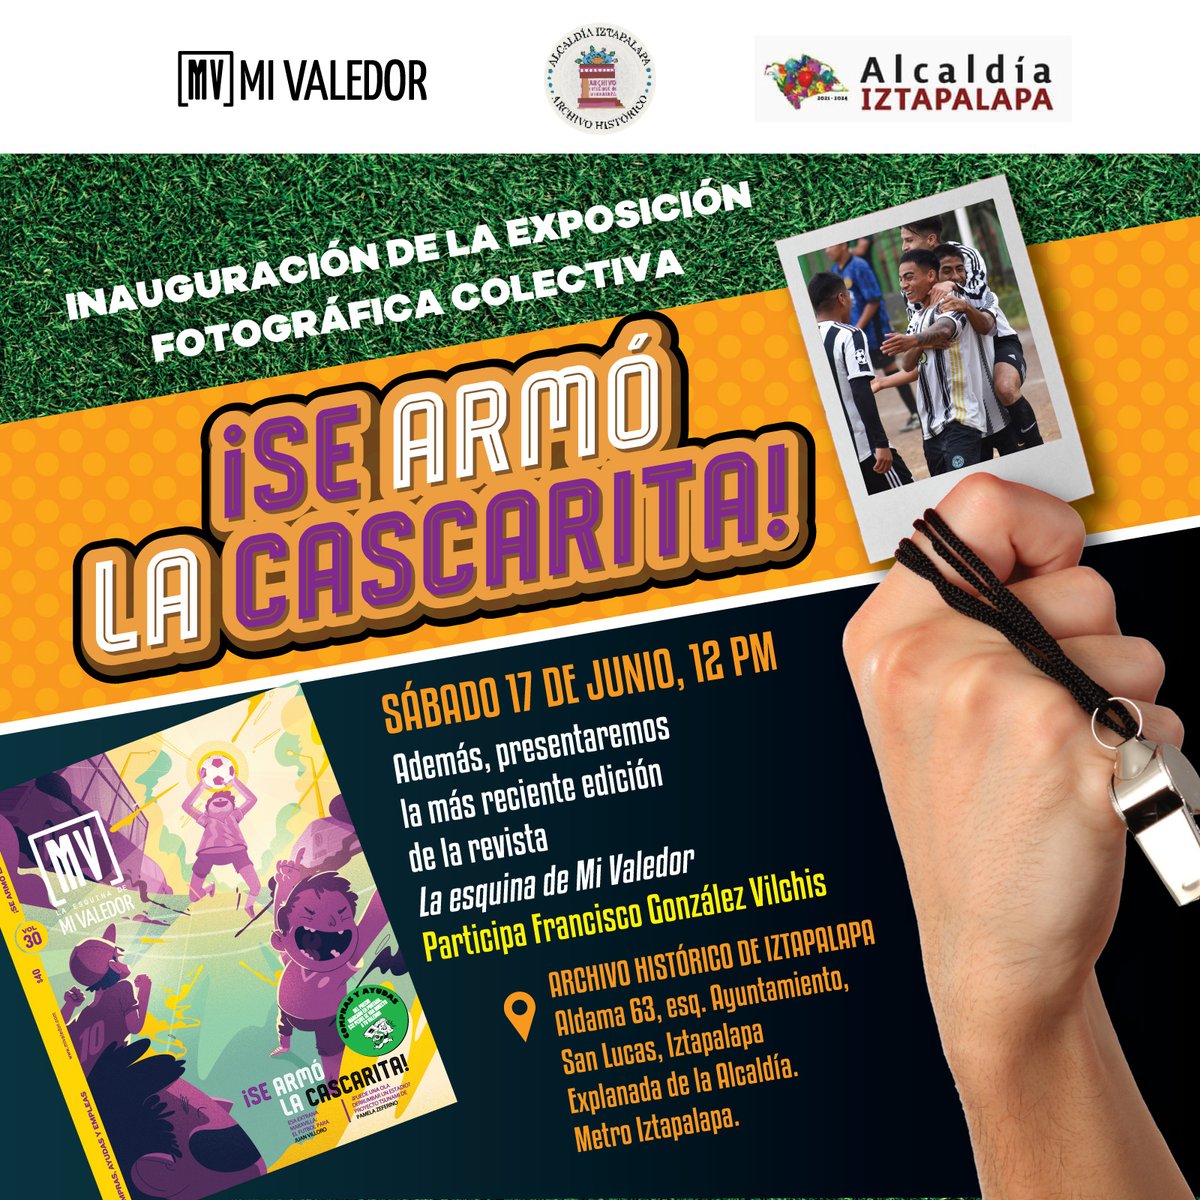 Invitación a la inauguración de la exposición fotográfica ¡Se armó la cascarita! en el Archivo Histórico de Iztapalapa el sábado 17 de junio a las 12 del día.